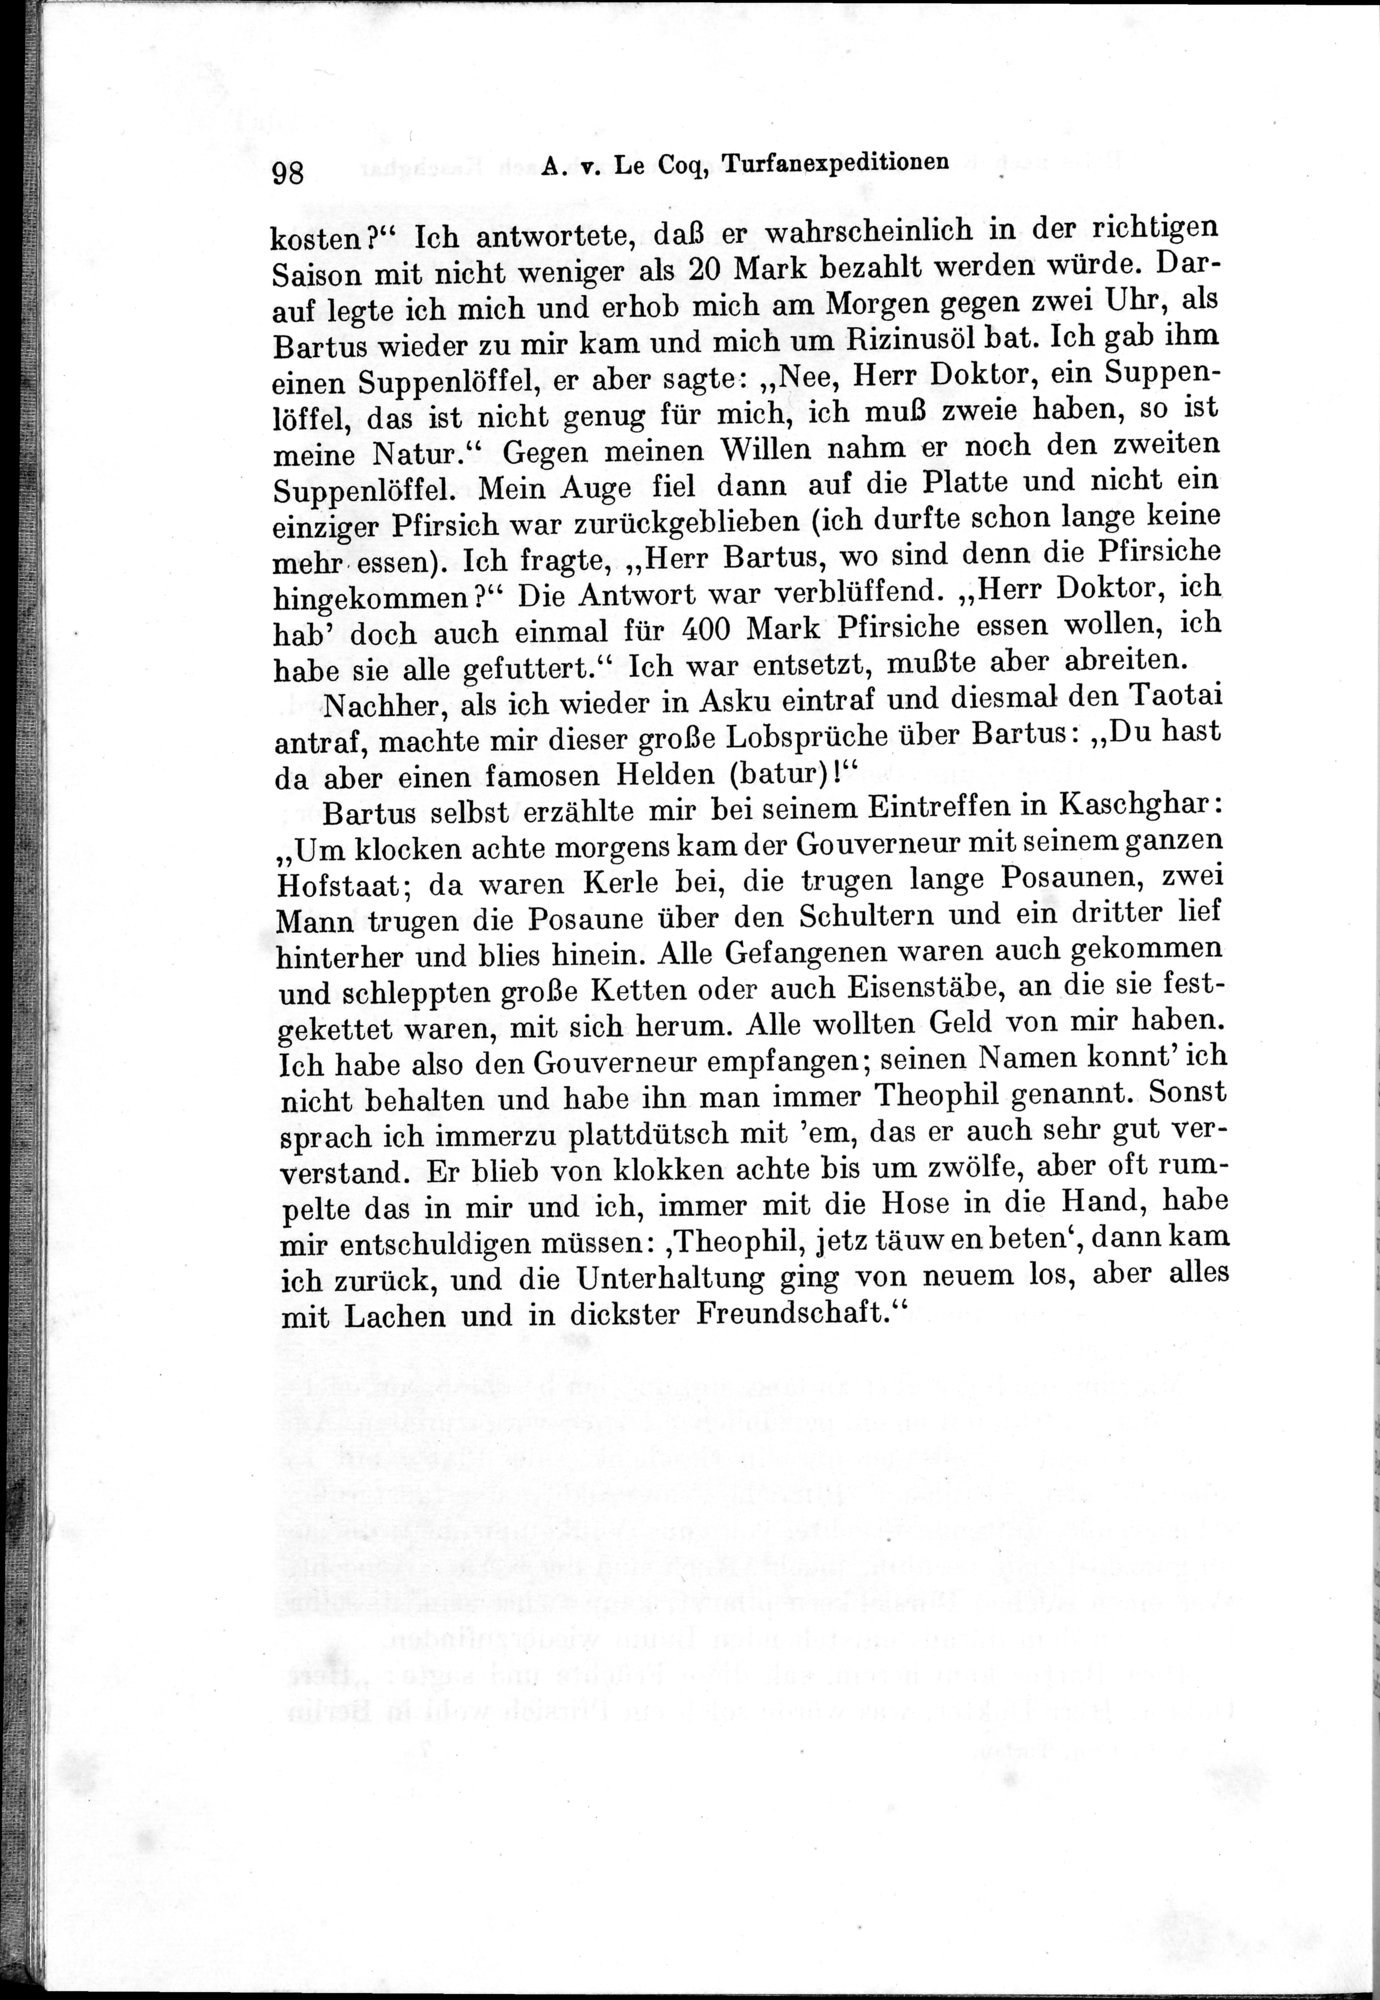 Auf Hellas Spuren in Ostturkistan : vol.1 / Page 144 (Grayscale High Resolution Image)